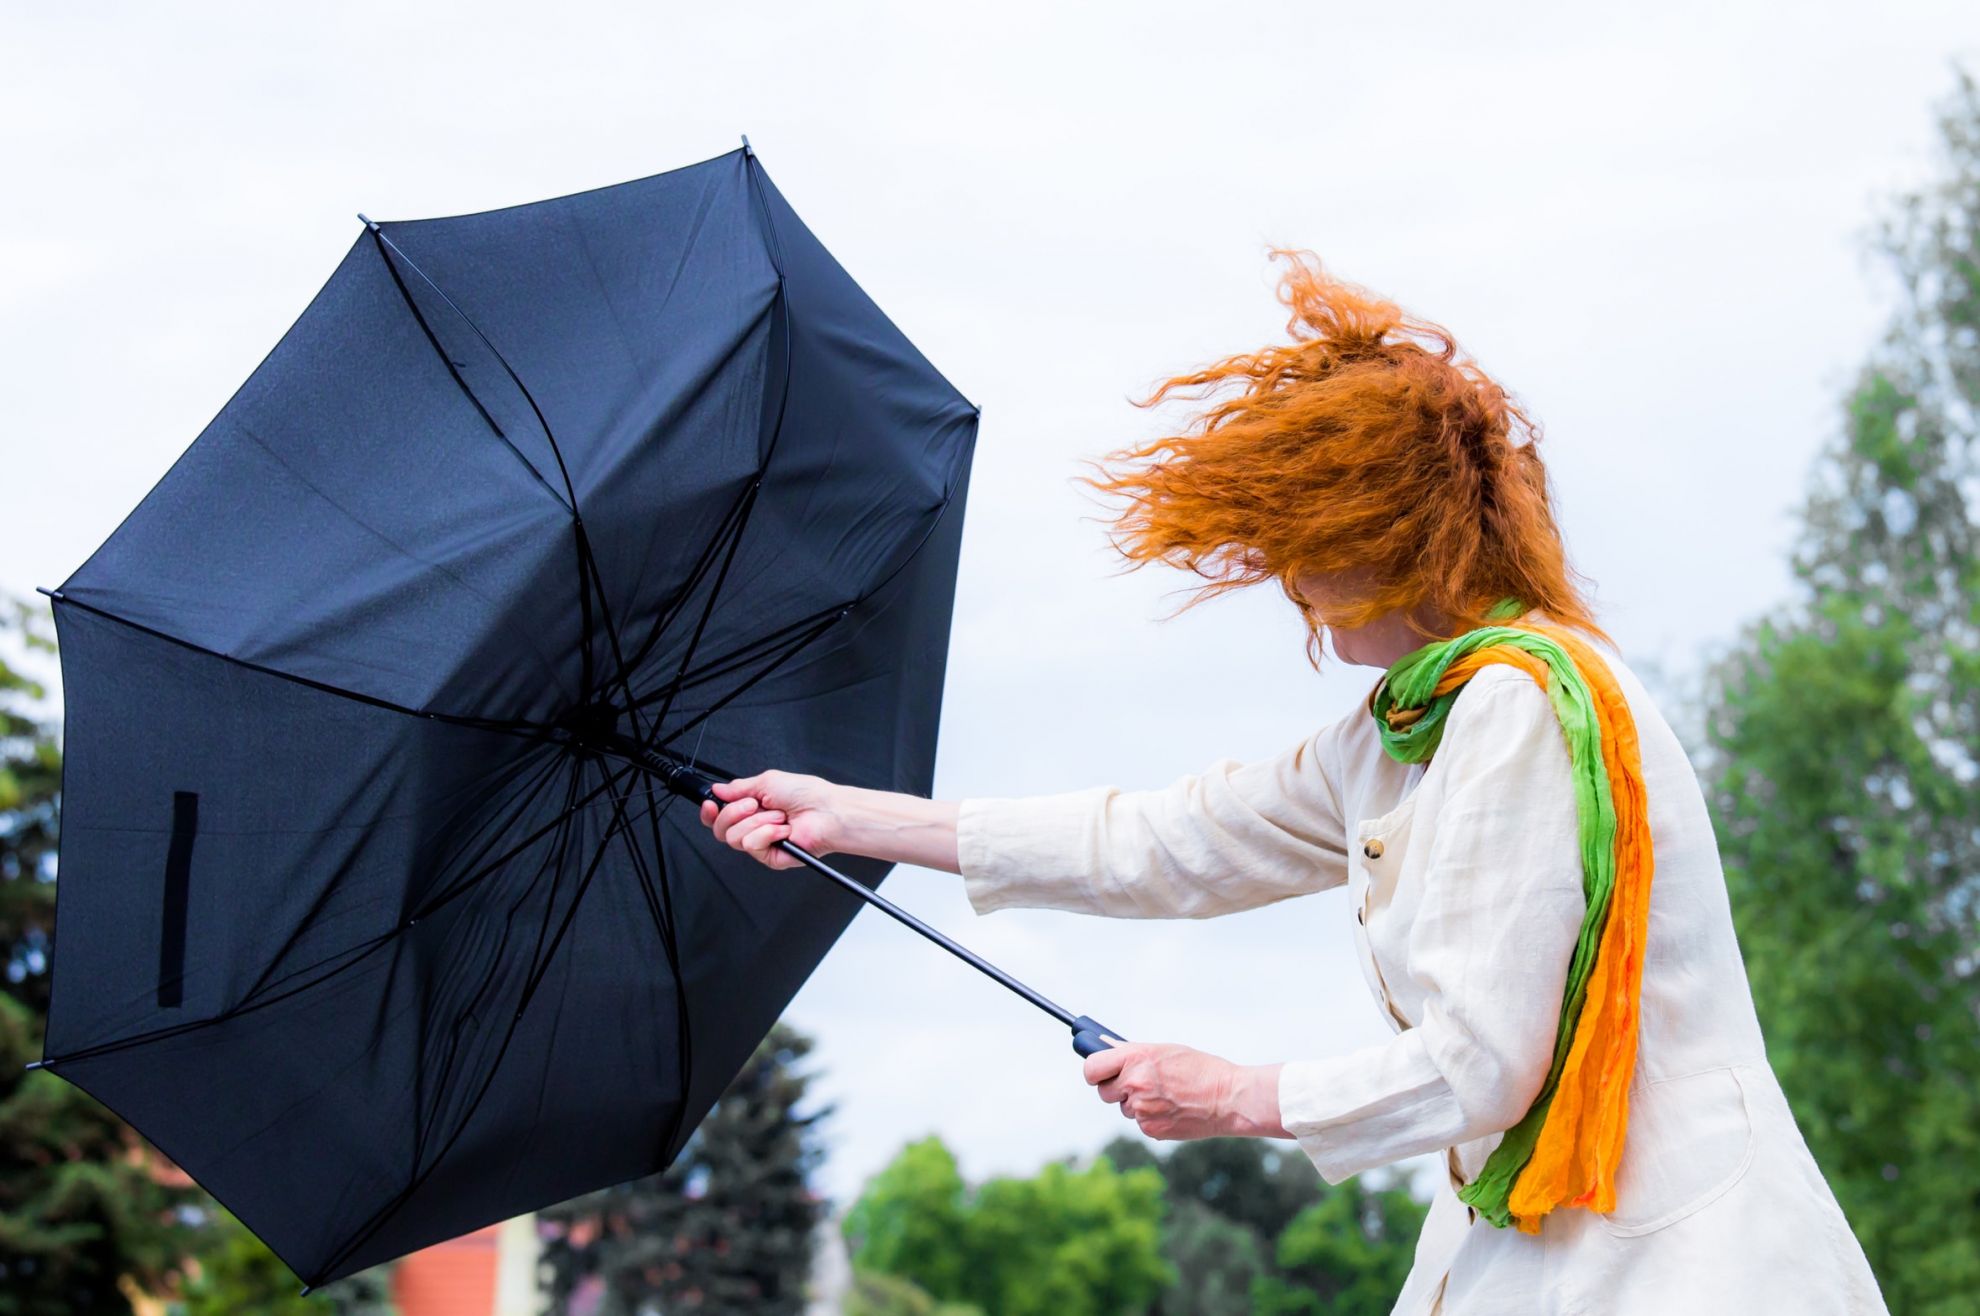 Frau mit Regenschirm bei Sturm.